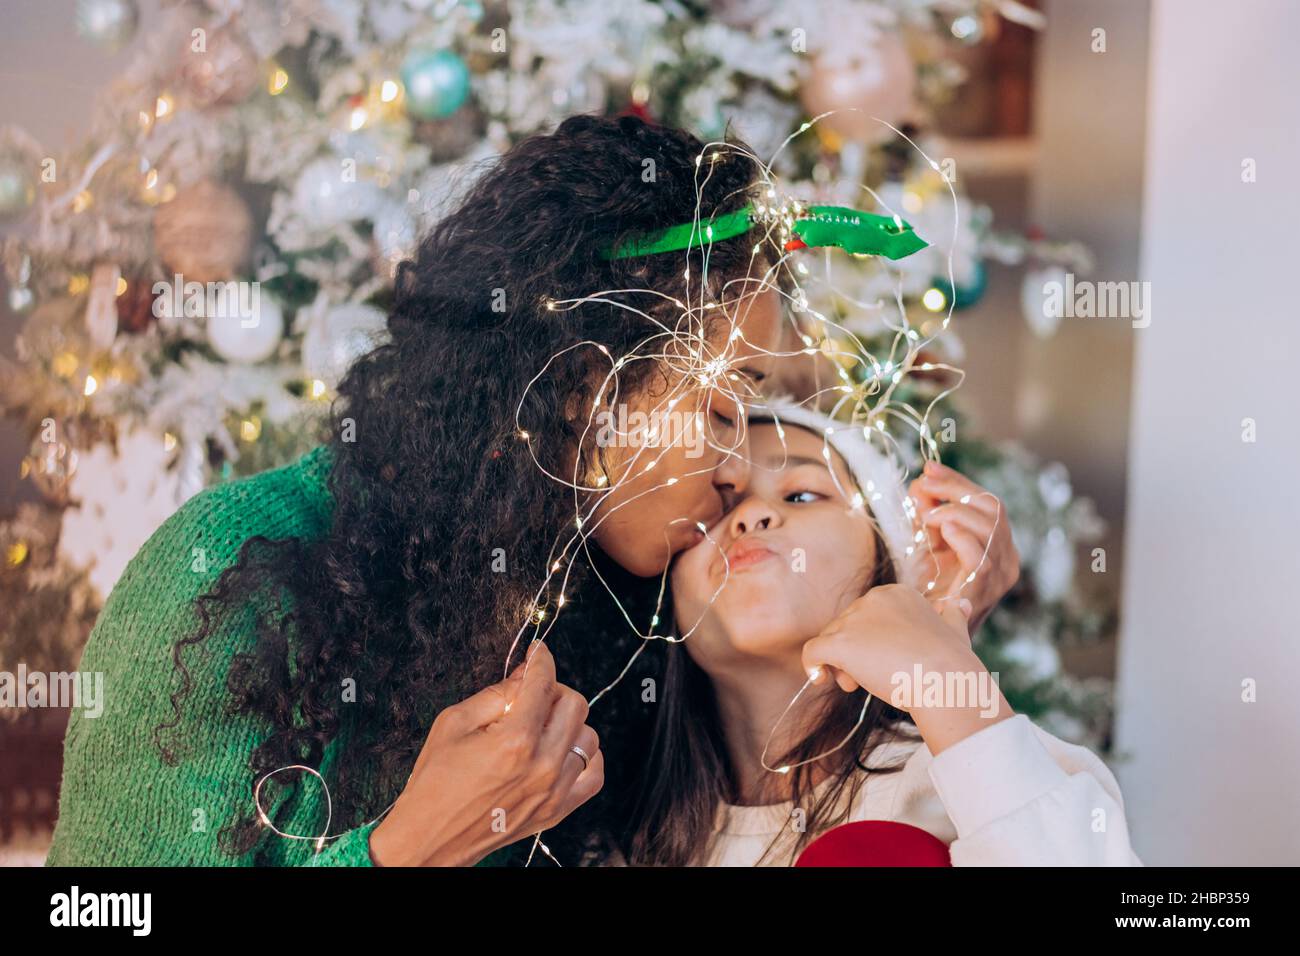 Hija morena con pelo largo y mujer curly afroamericana pose envuelta en guirnalda iluminante contra el árbol de Navidad Foto de stock